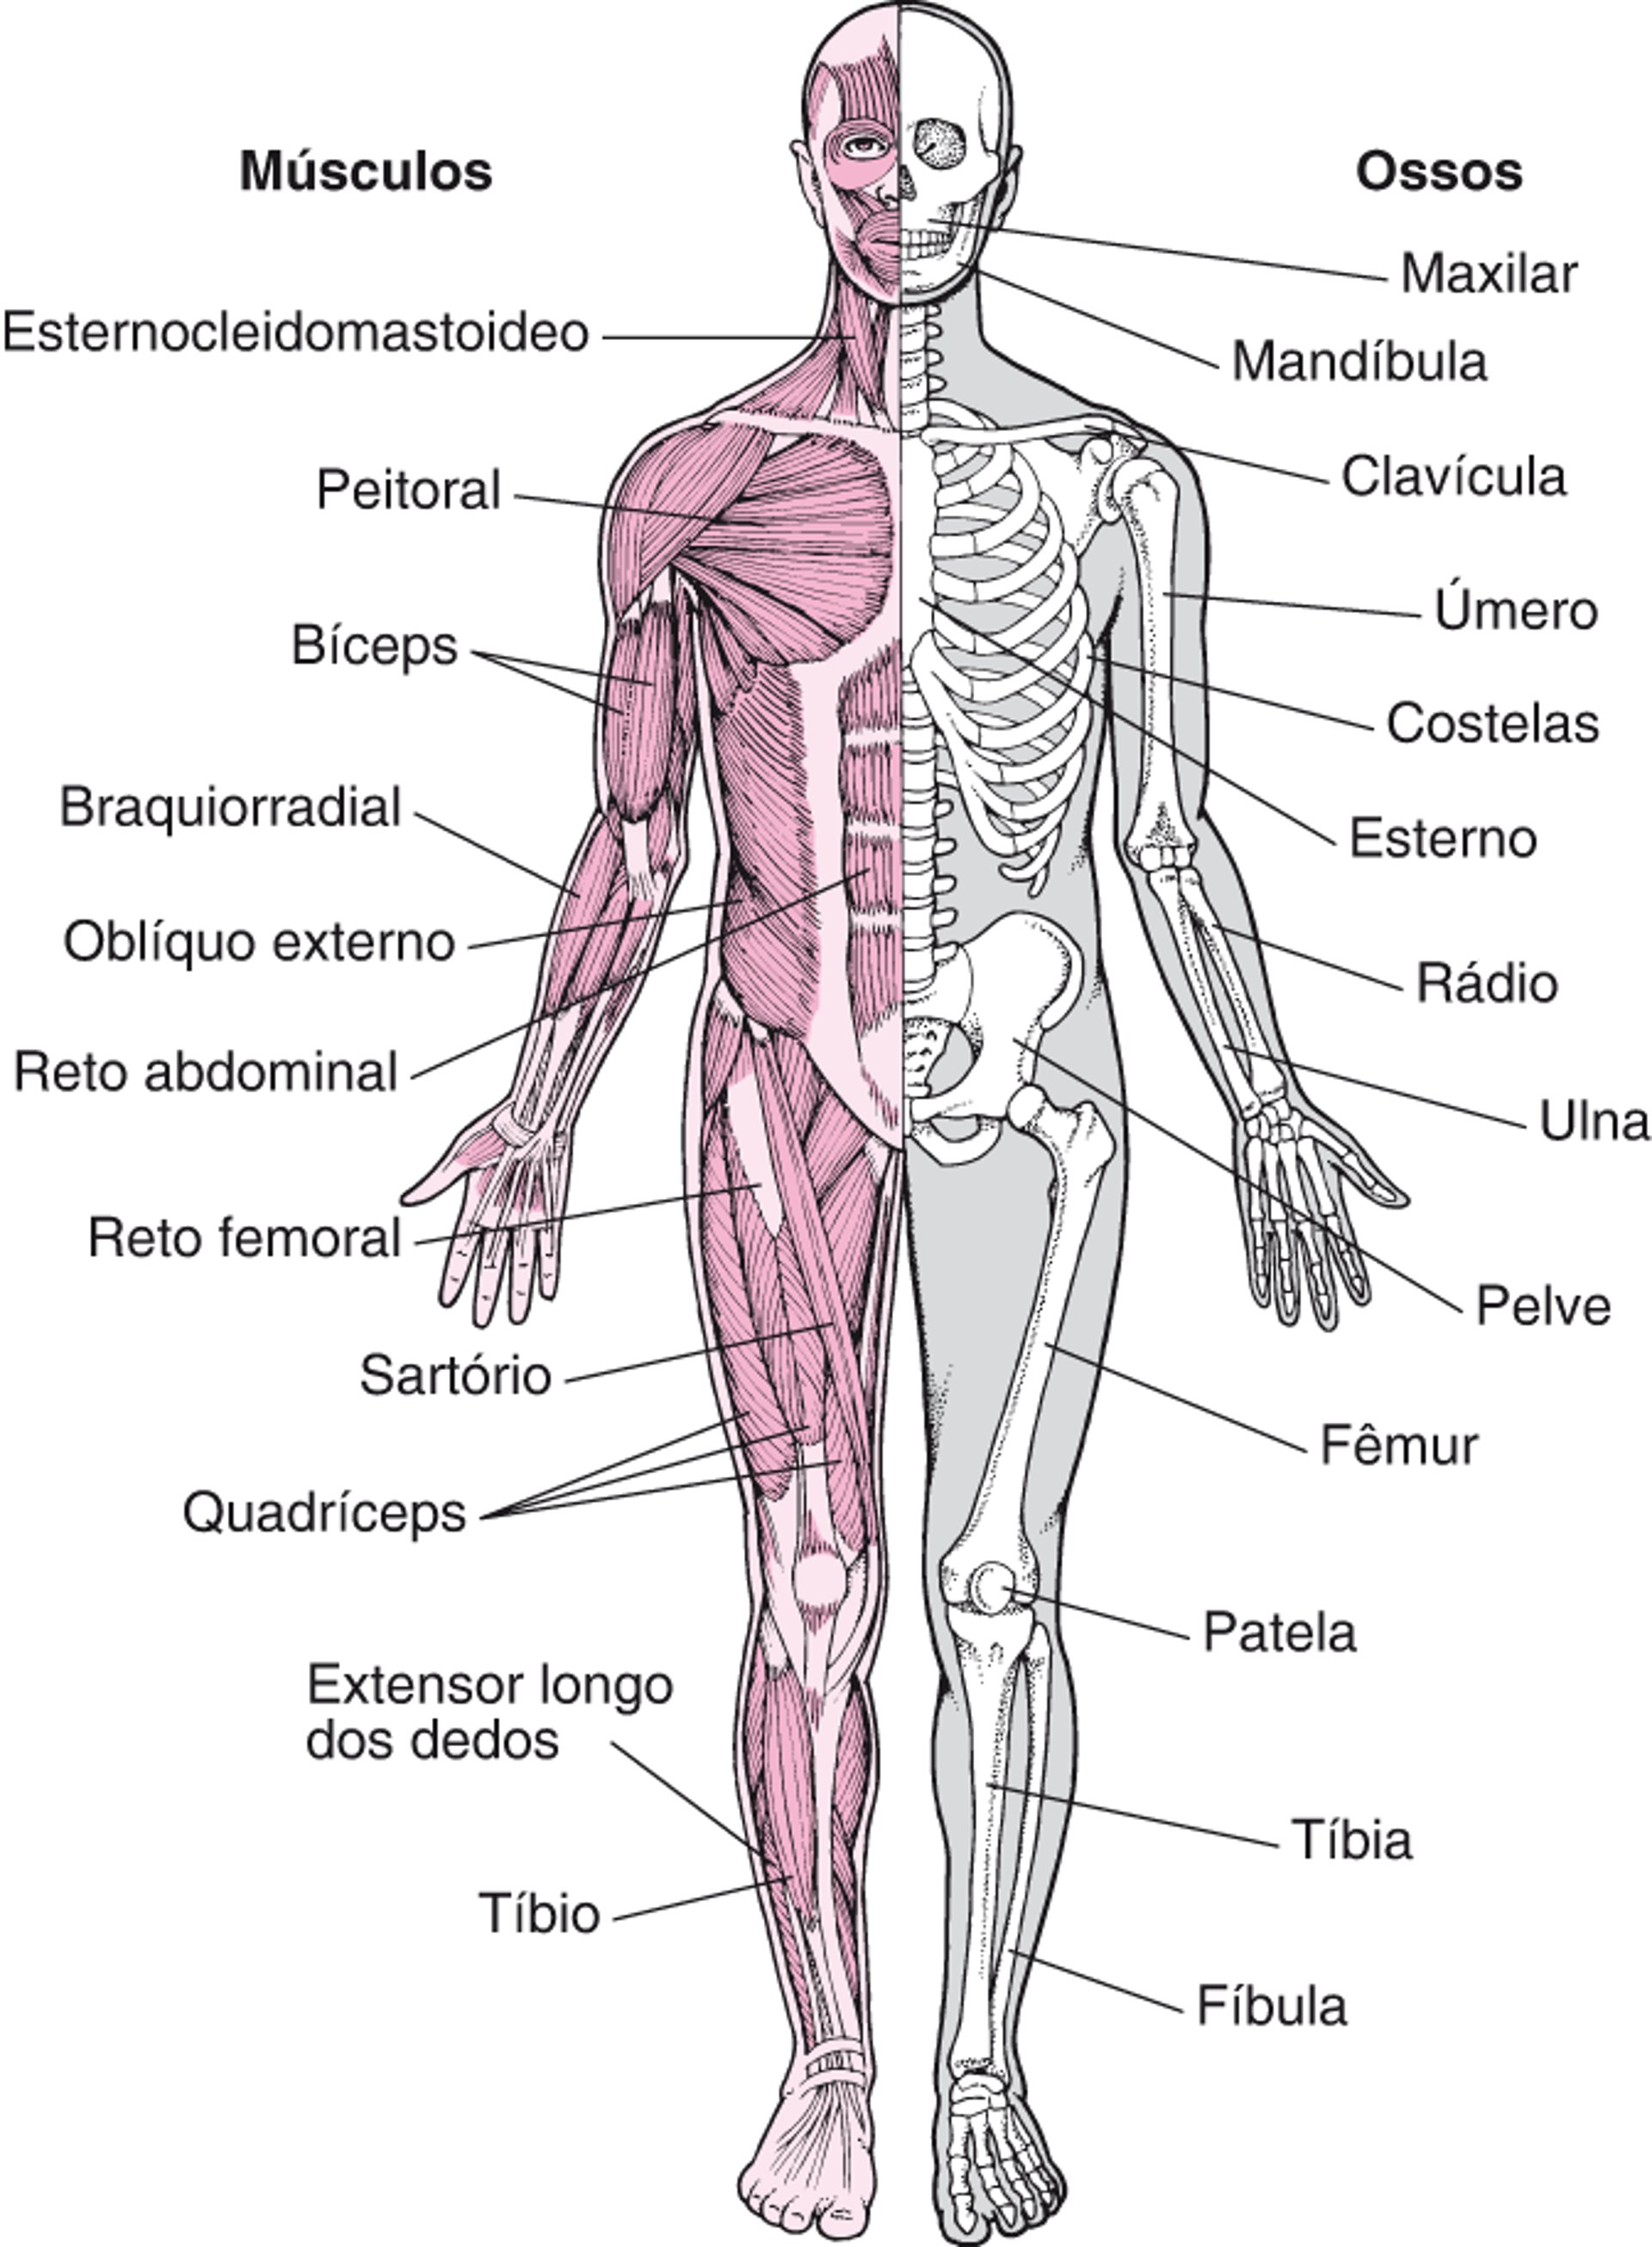 Sistema musculoesquelético (1)